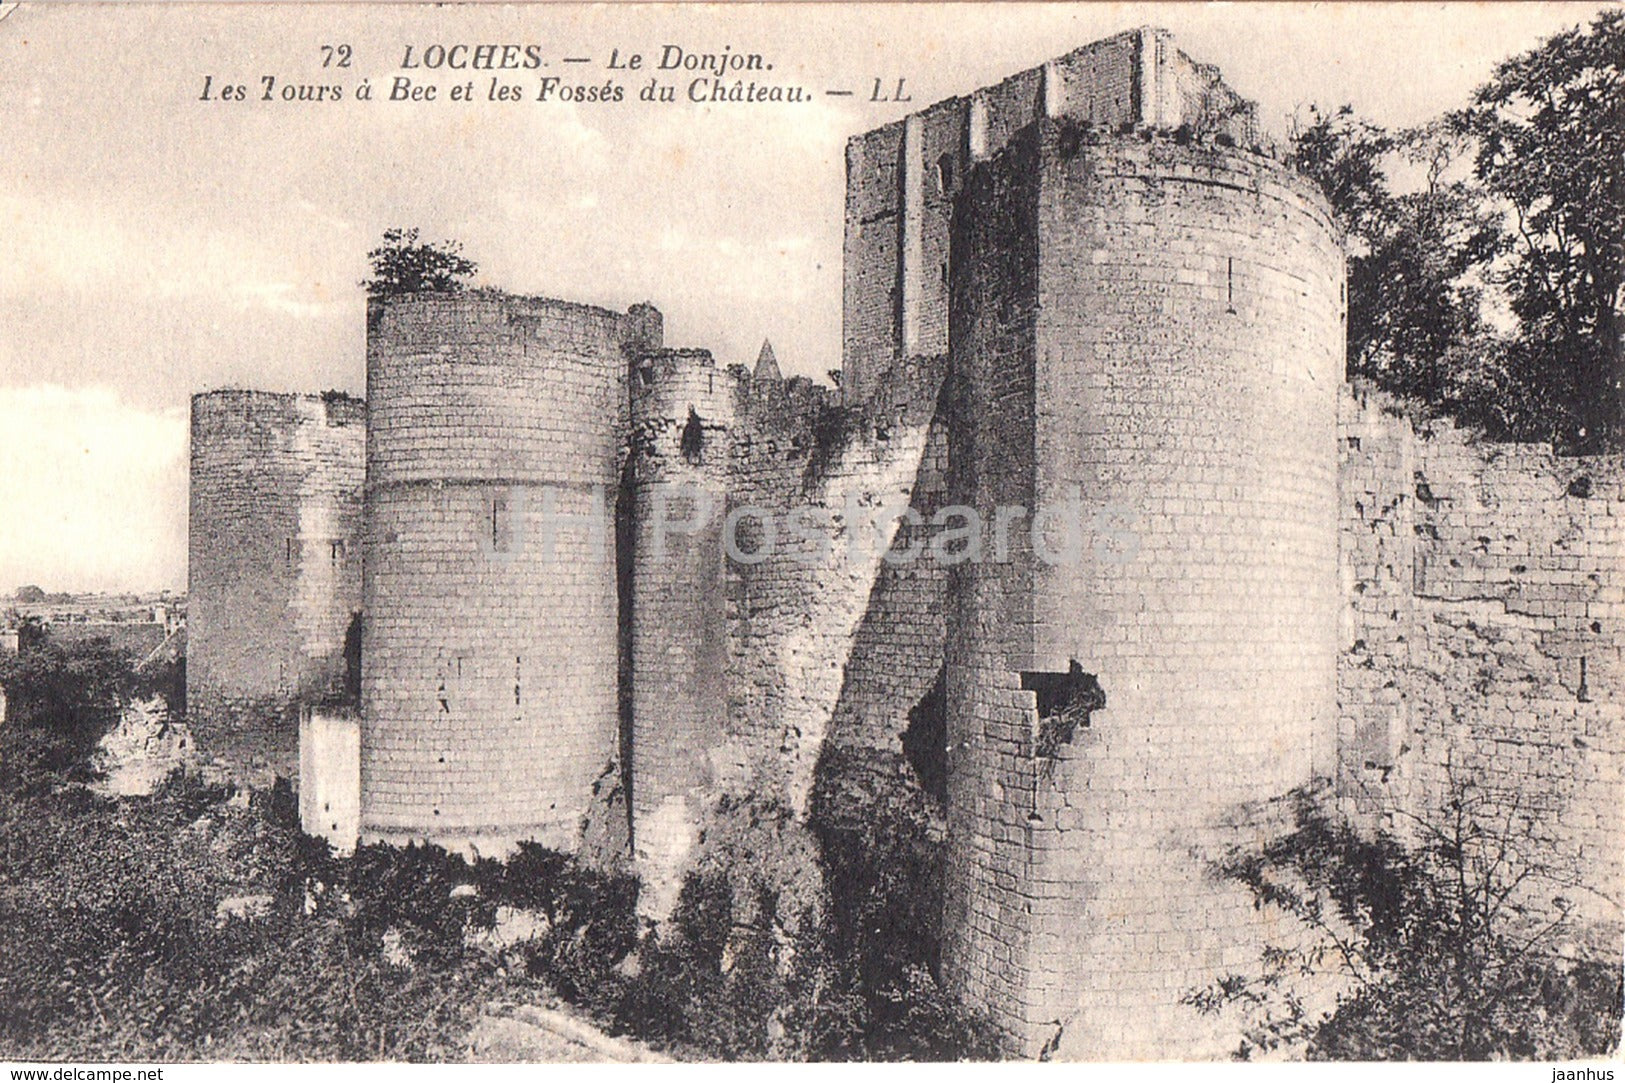 Loches - Le Donjon - Les tours a Bec les Fosses du Chateau - castle - 72 - old postcard - France - used - JH Postcards